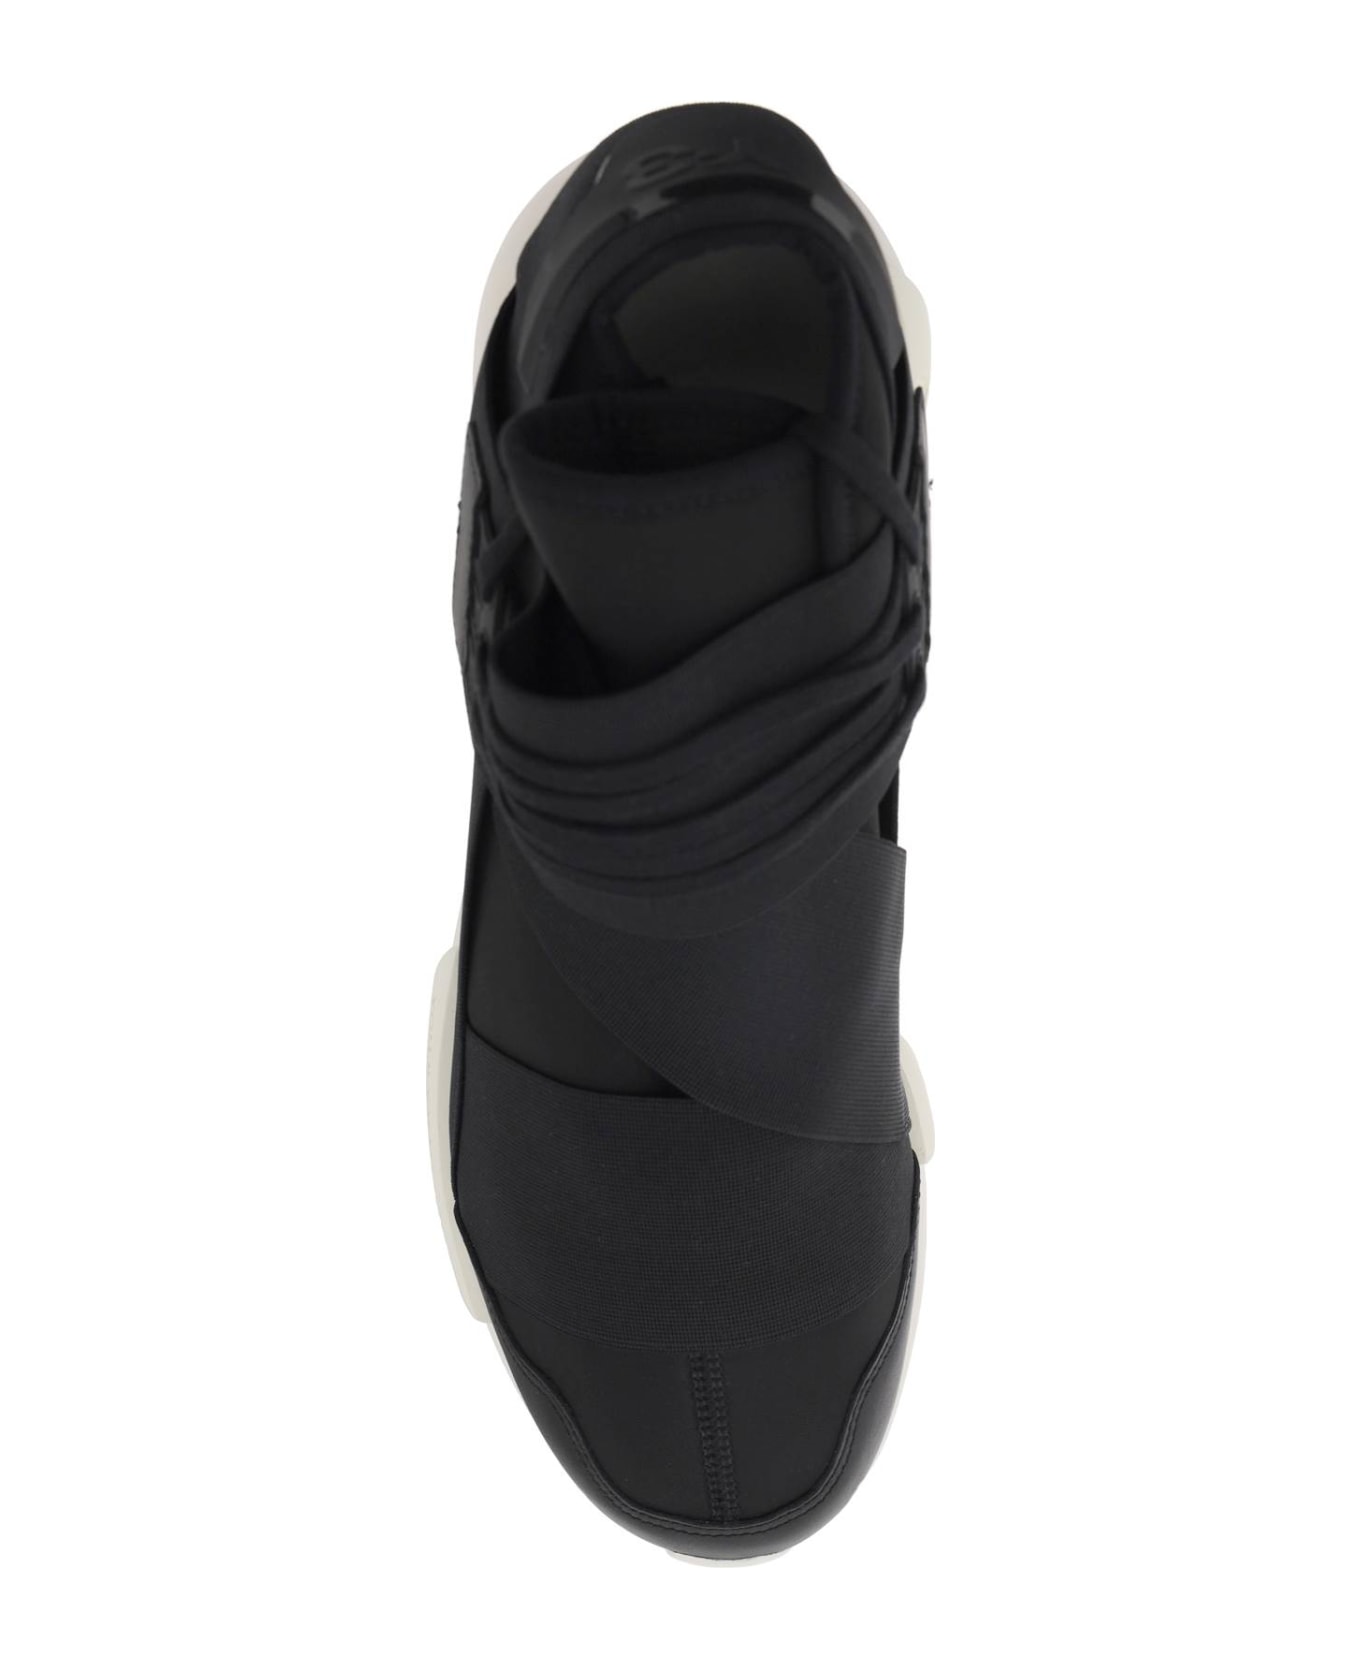 Y-3 Qasa Sneakers - BLACKBLACKOWHITE